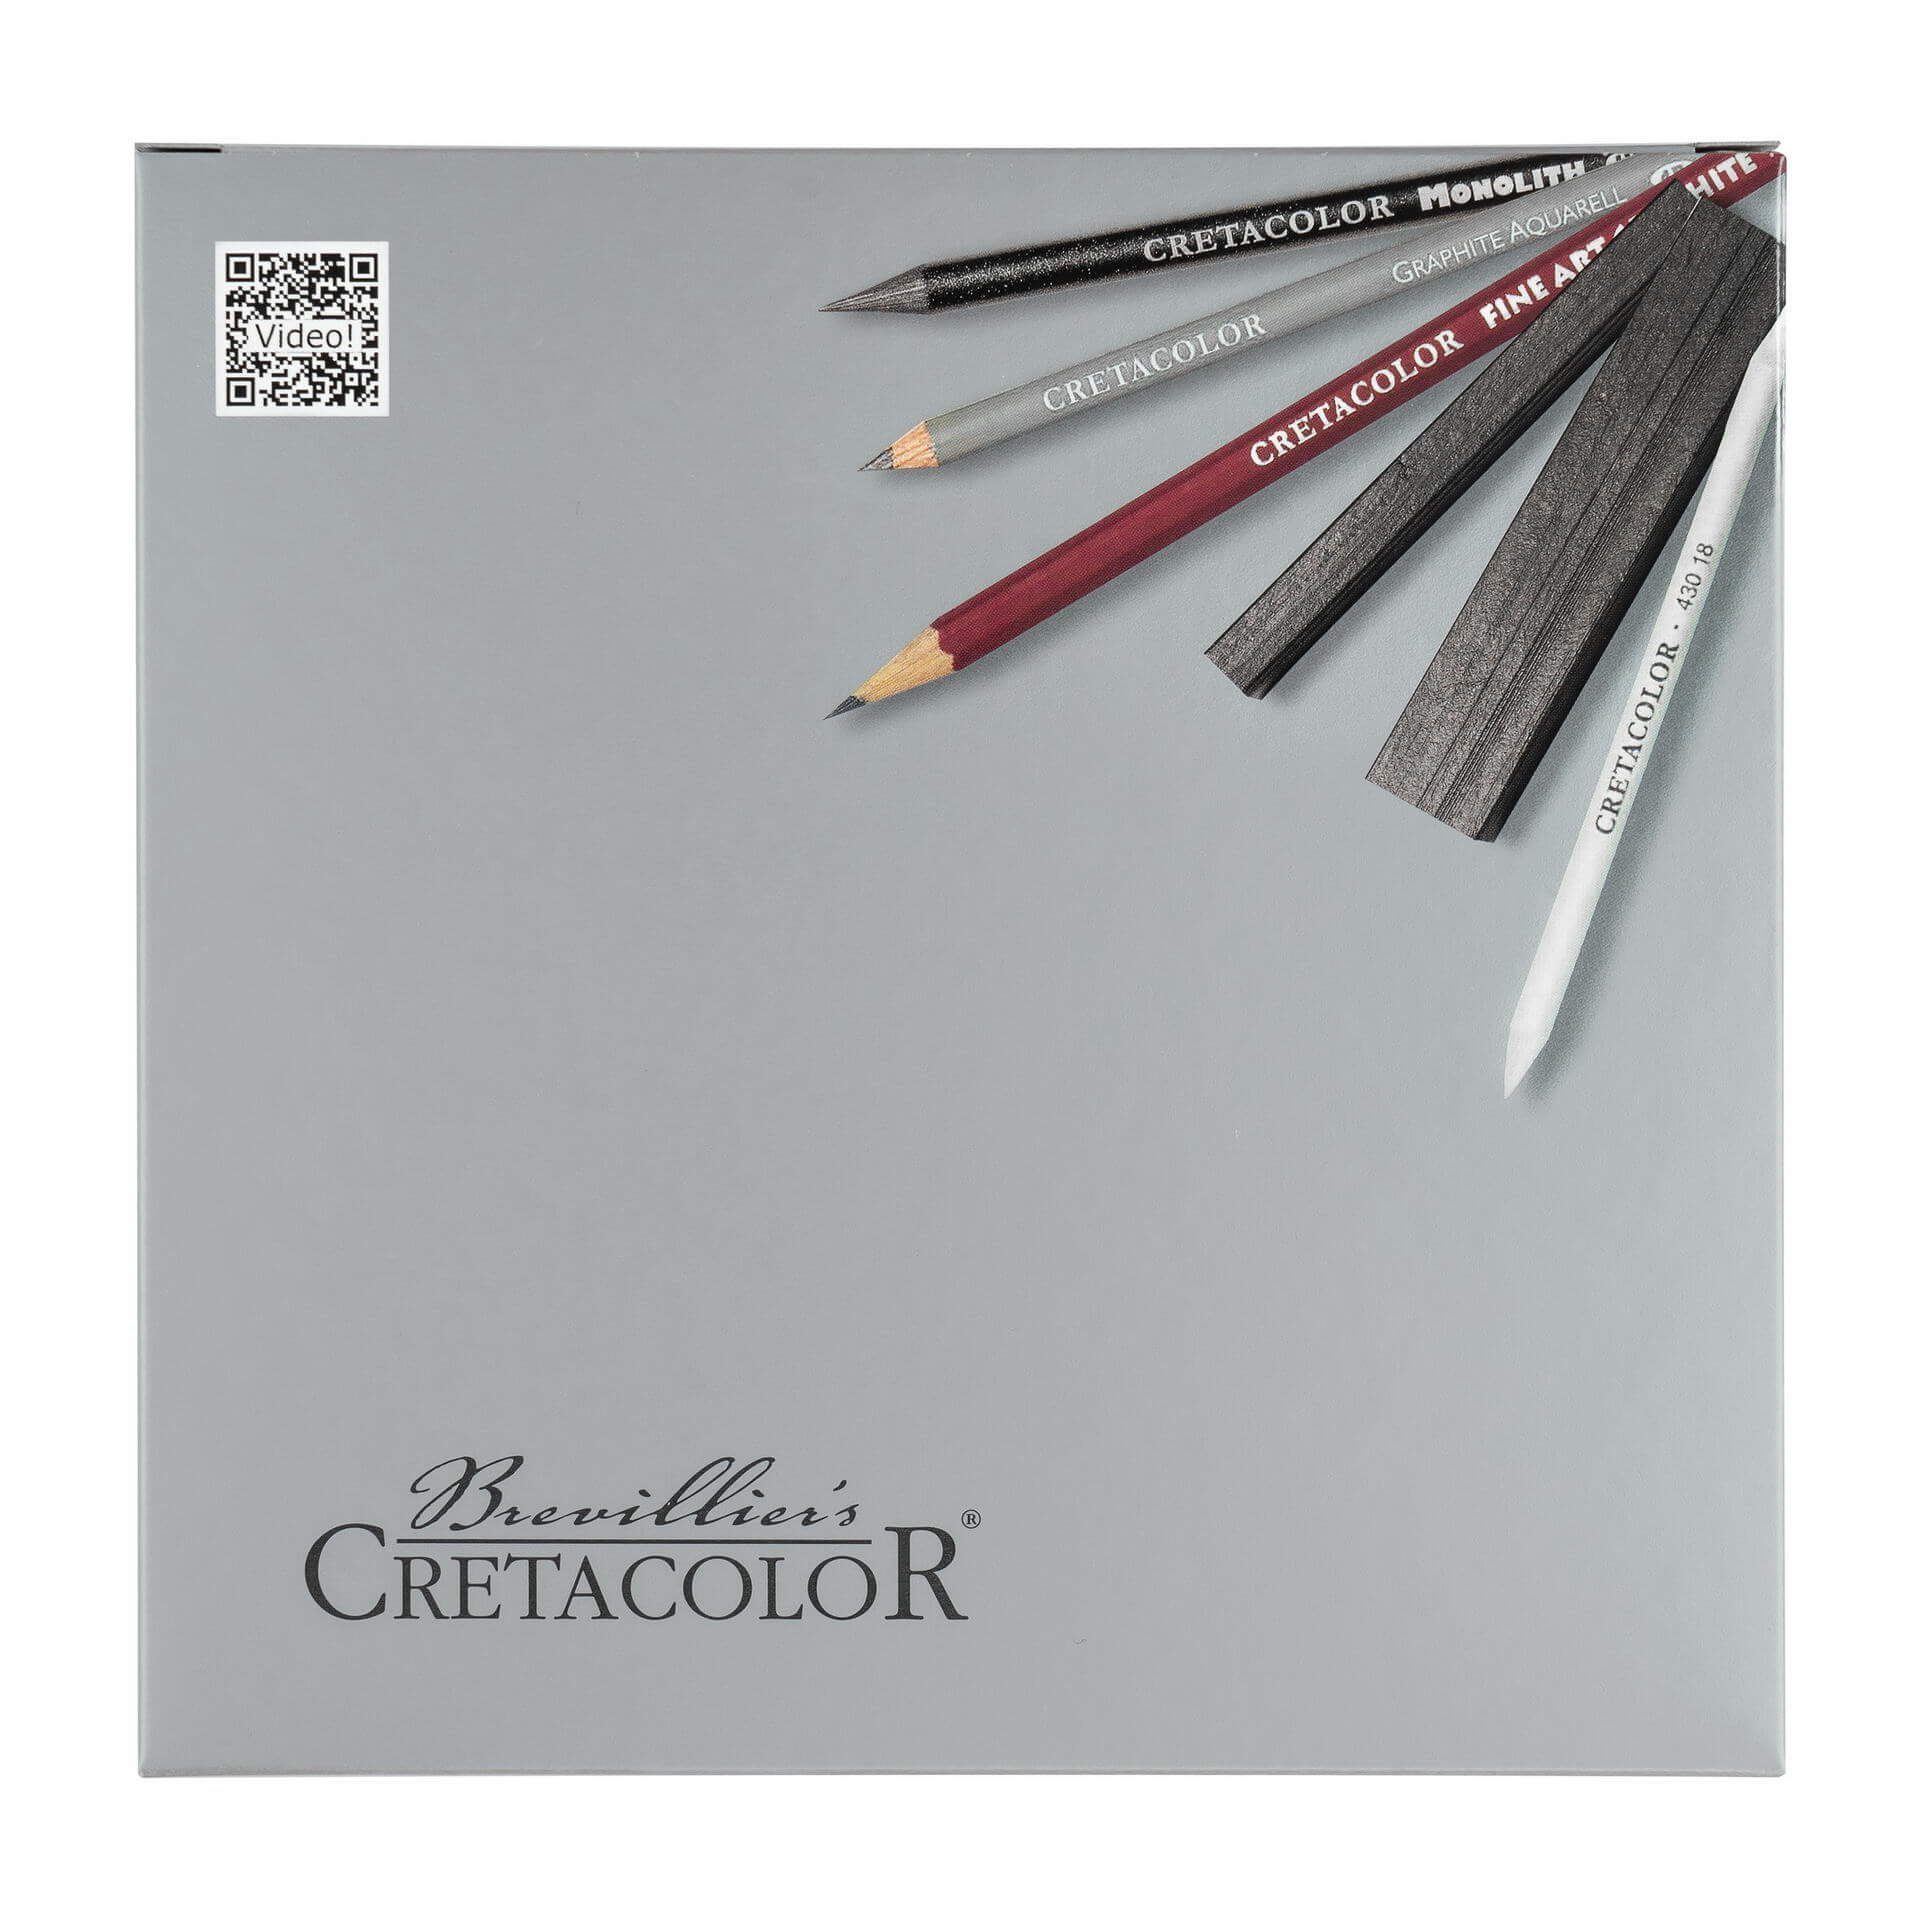 zum - in Box Ideal Skizzieren Zeichnen Bleistift Silver Brevilliers - Künstler, Graphitset Cretacolor und für Made Austria 17-teilig